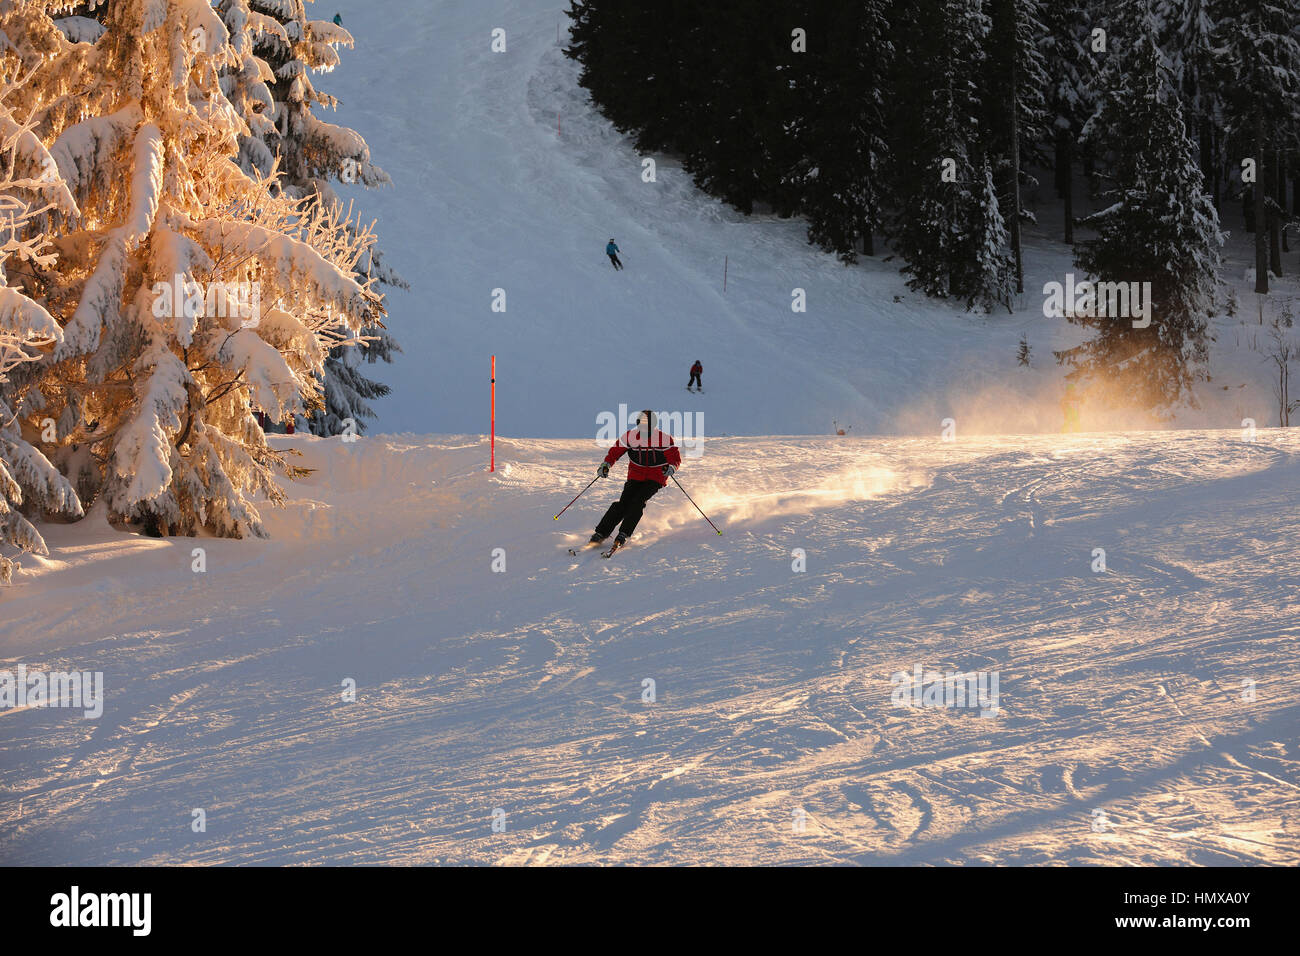 Skifahrer mit Helm Skifahren auf der Piste. Die Skipiste direkt auf einem Hügel, bedeckt mit Schnee gebadet in einem goldenen Sonnenuntergang Bäume. Blick auf Schnee bedeckt-Skipiste Stockfoto